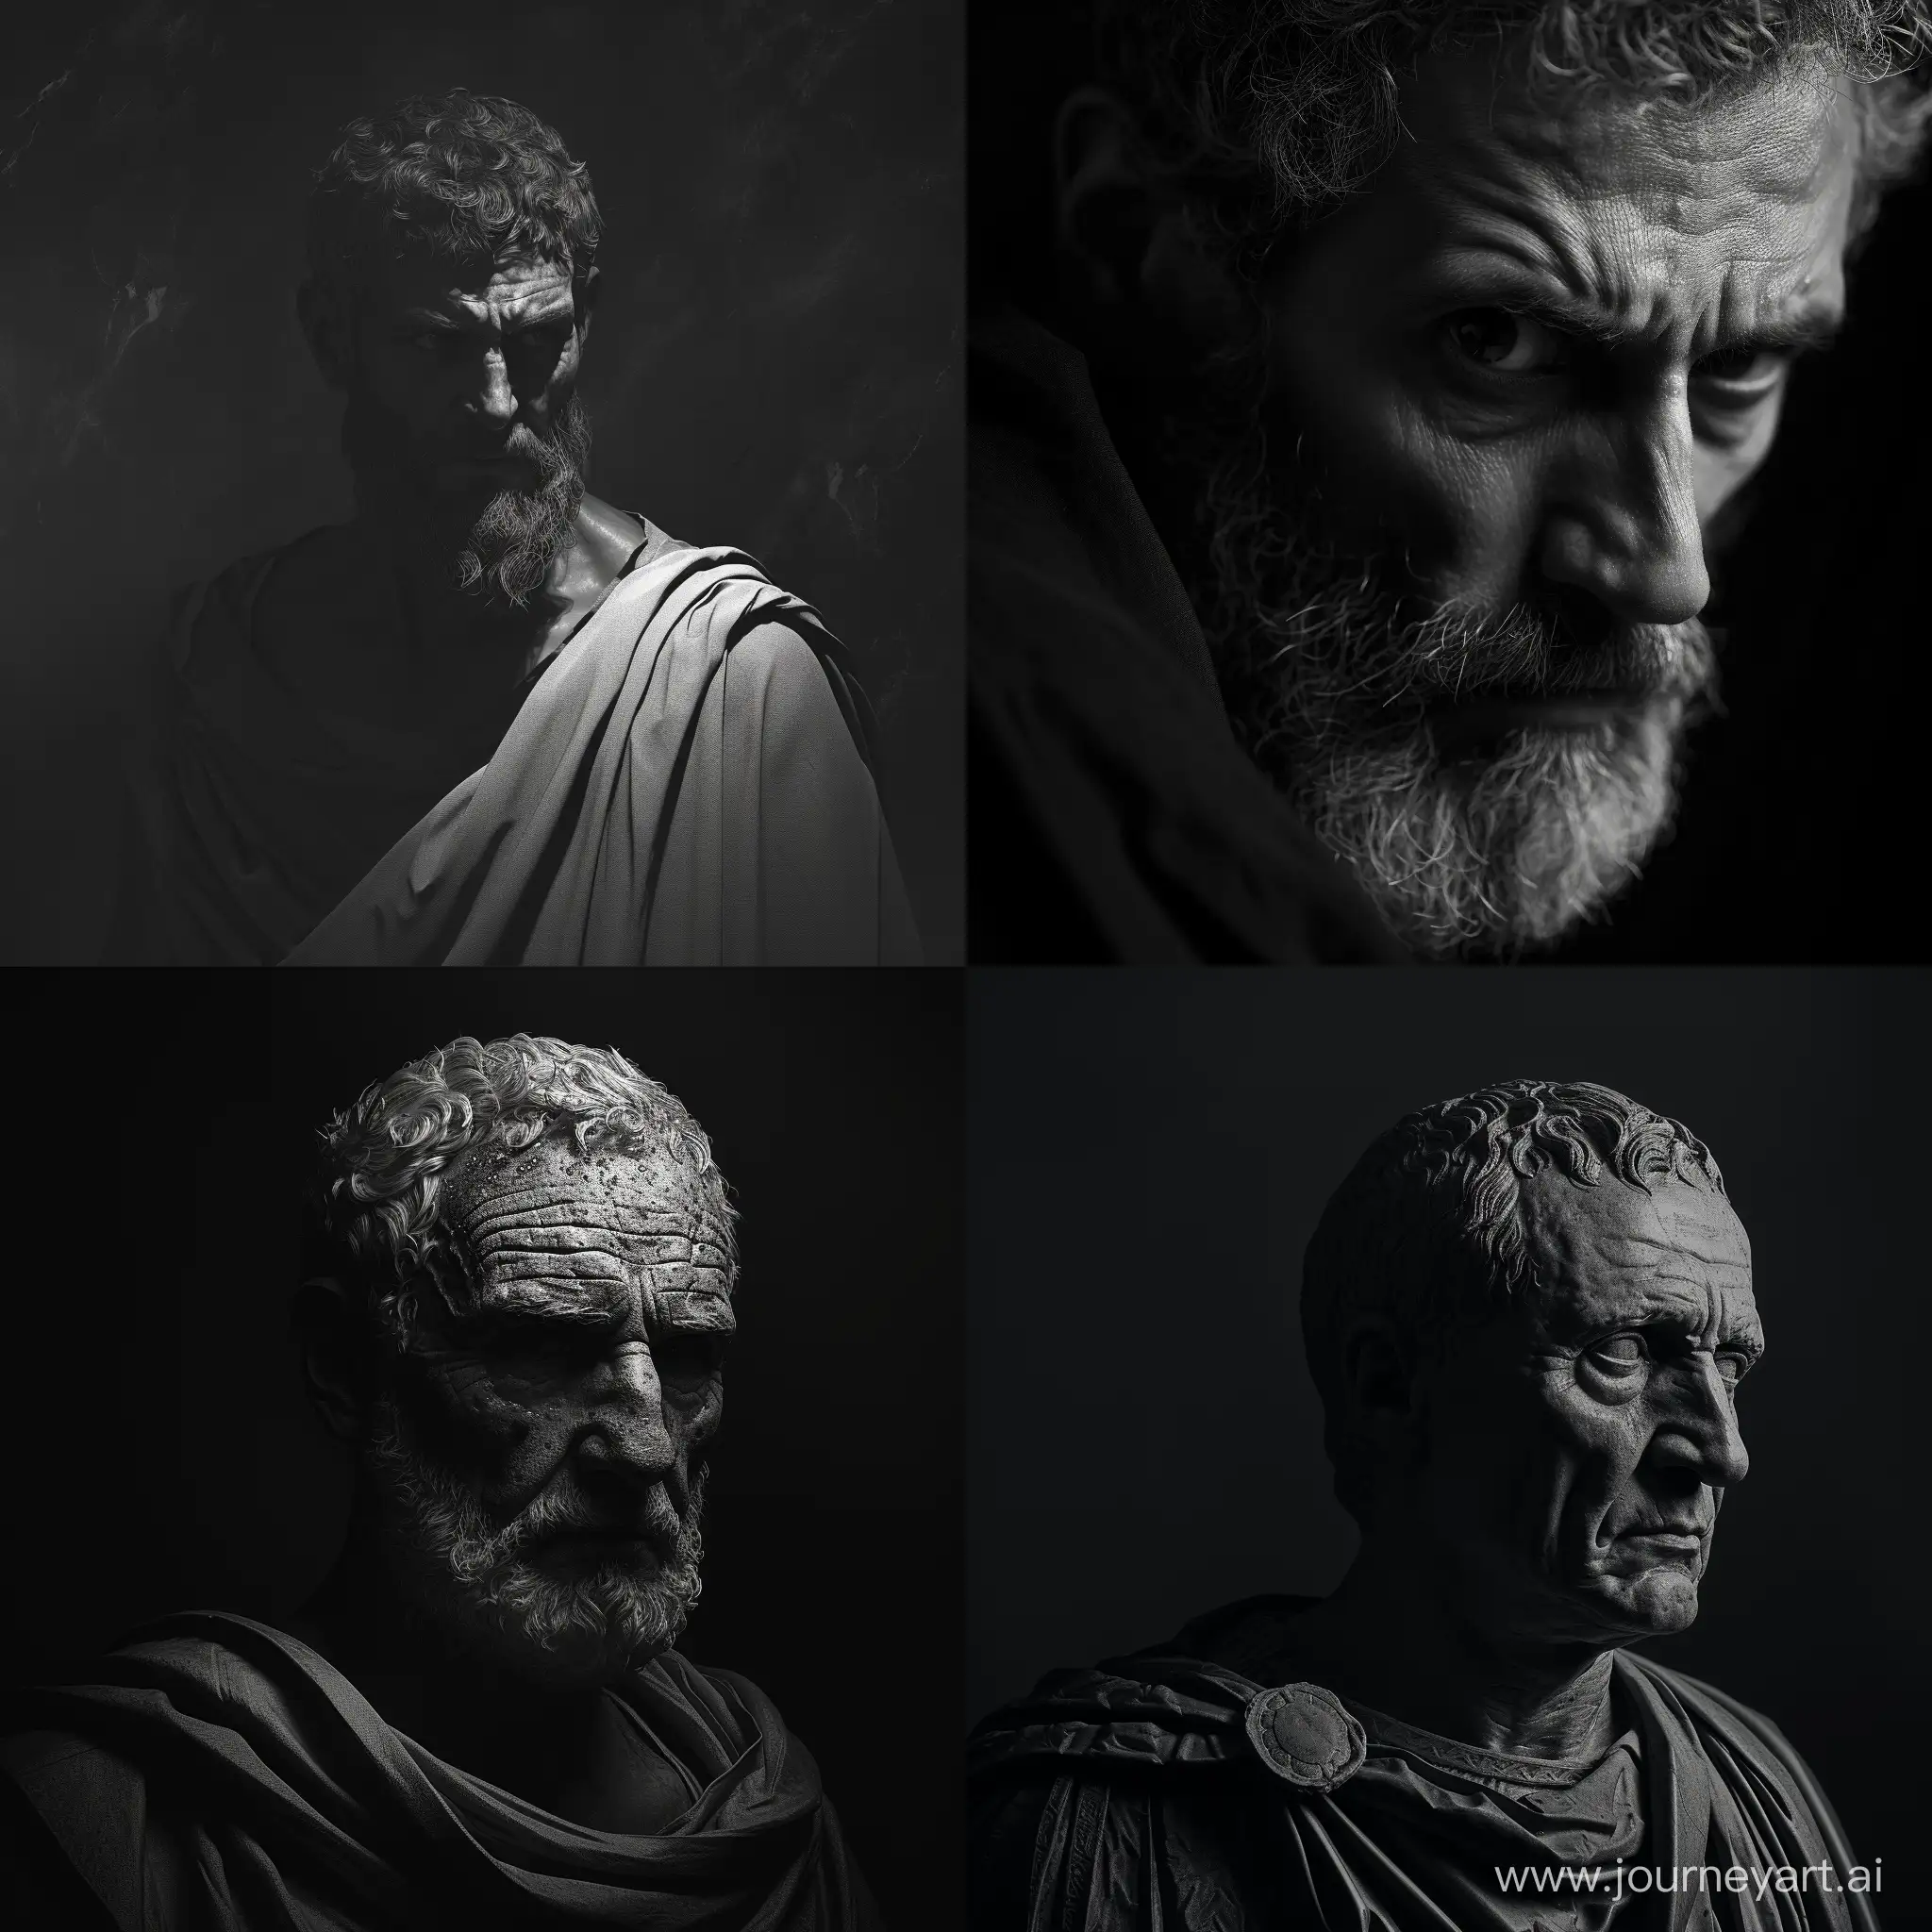 Stoic-Cinematic-Portrait-of-Lucius-Annaeus-Seneca-in-Dramatic-Black-and-White